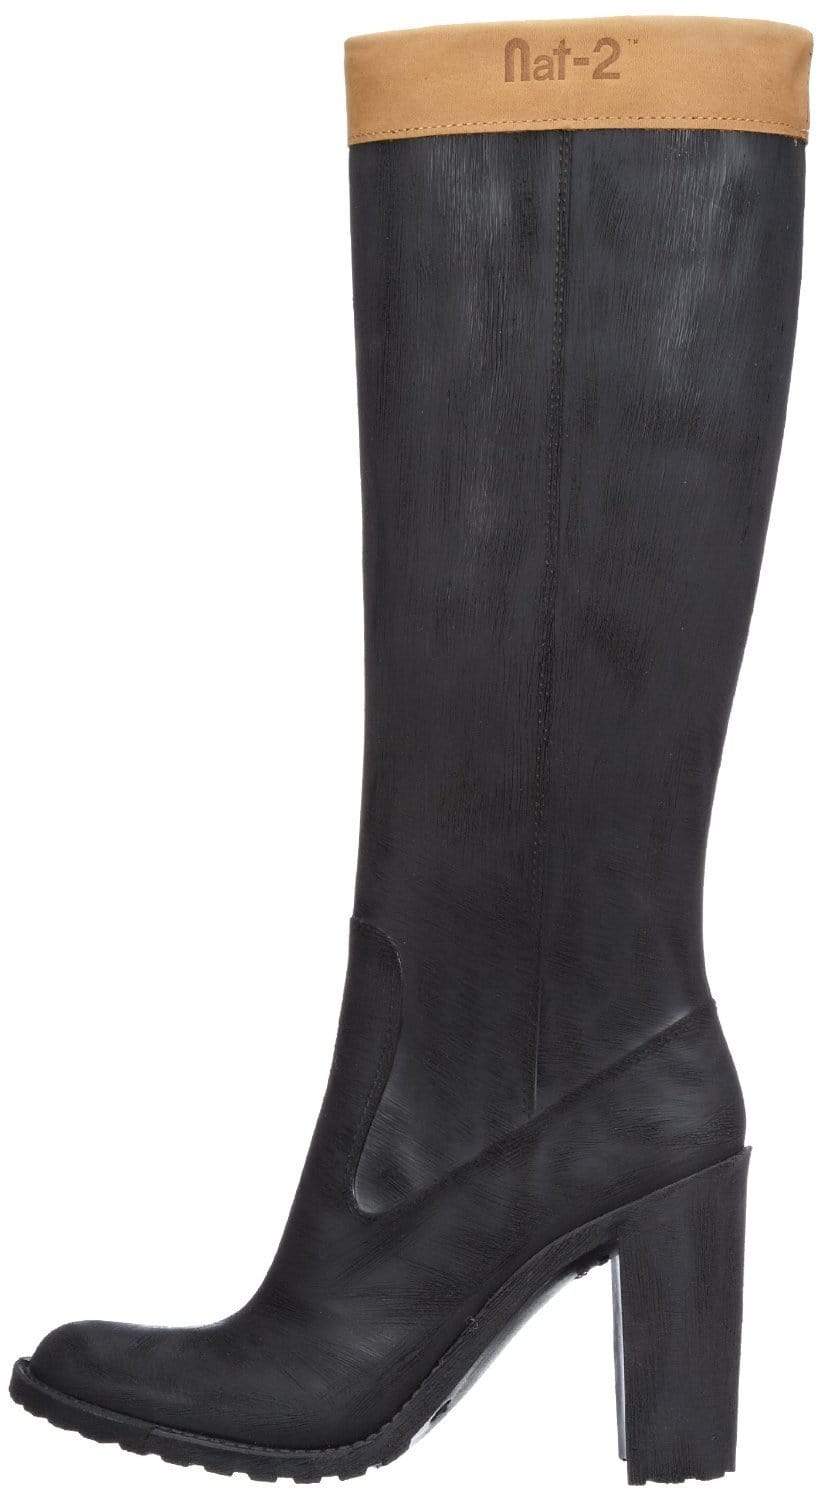 Robuste Prime Sharp Rain Boots i gummi og genanvendt læder.